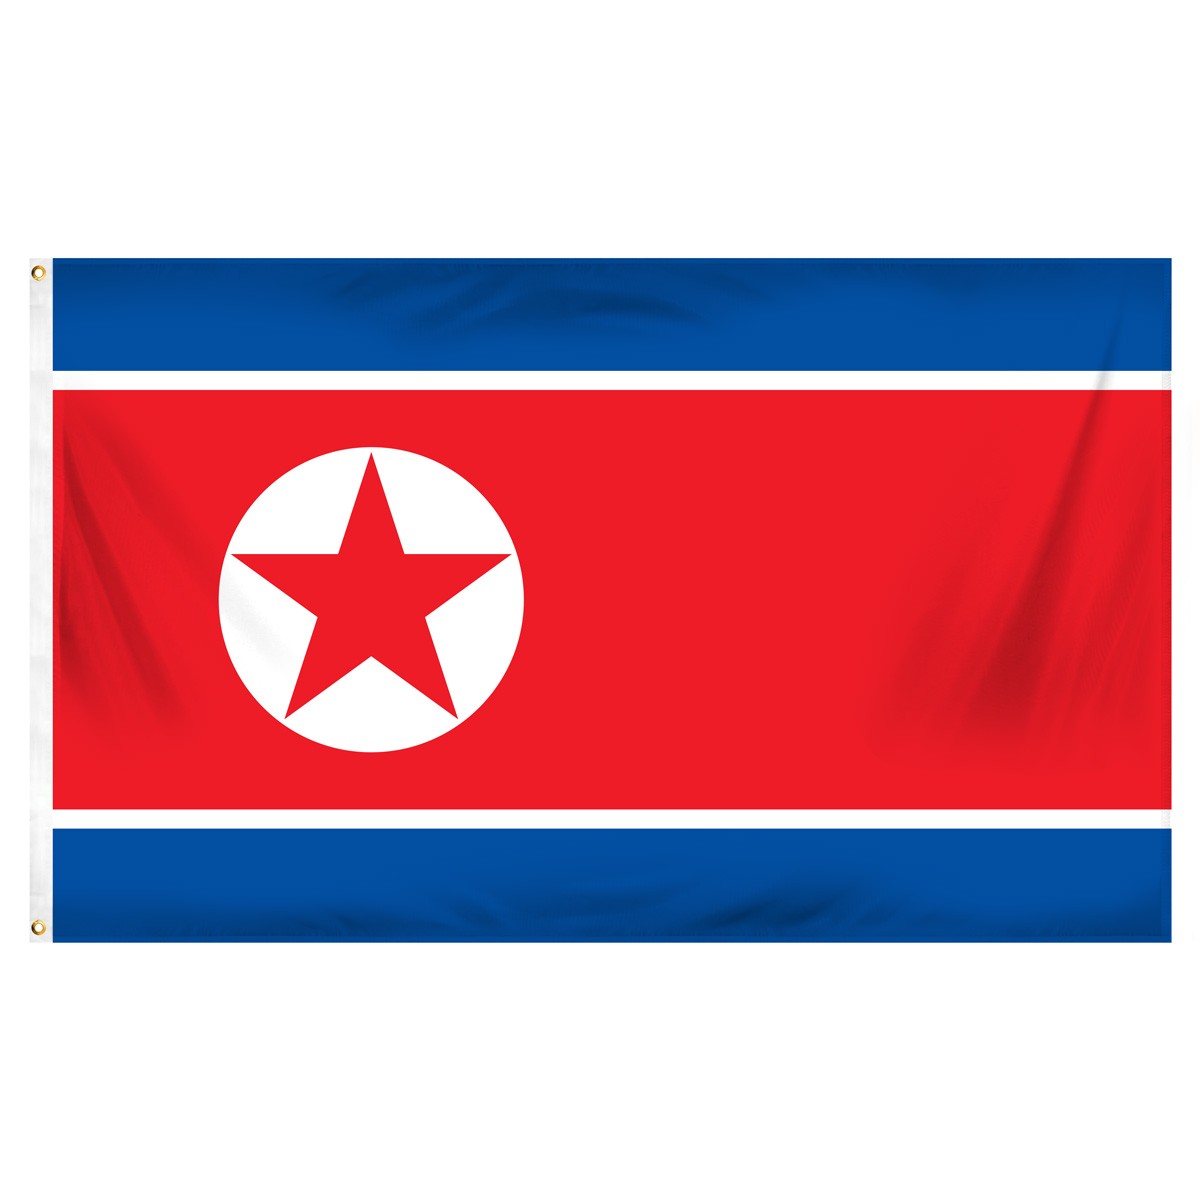 नेपालमा उत्तर कोरियाको लगानी प्रतिबन्ध, ९ कम्पनीलाई लगानी फिर्ता लैजान निर्देशन